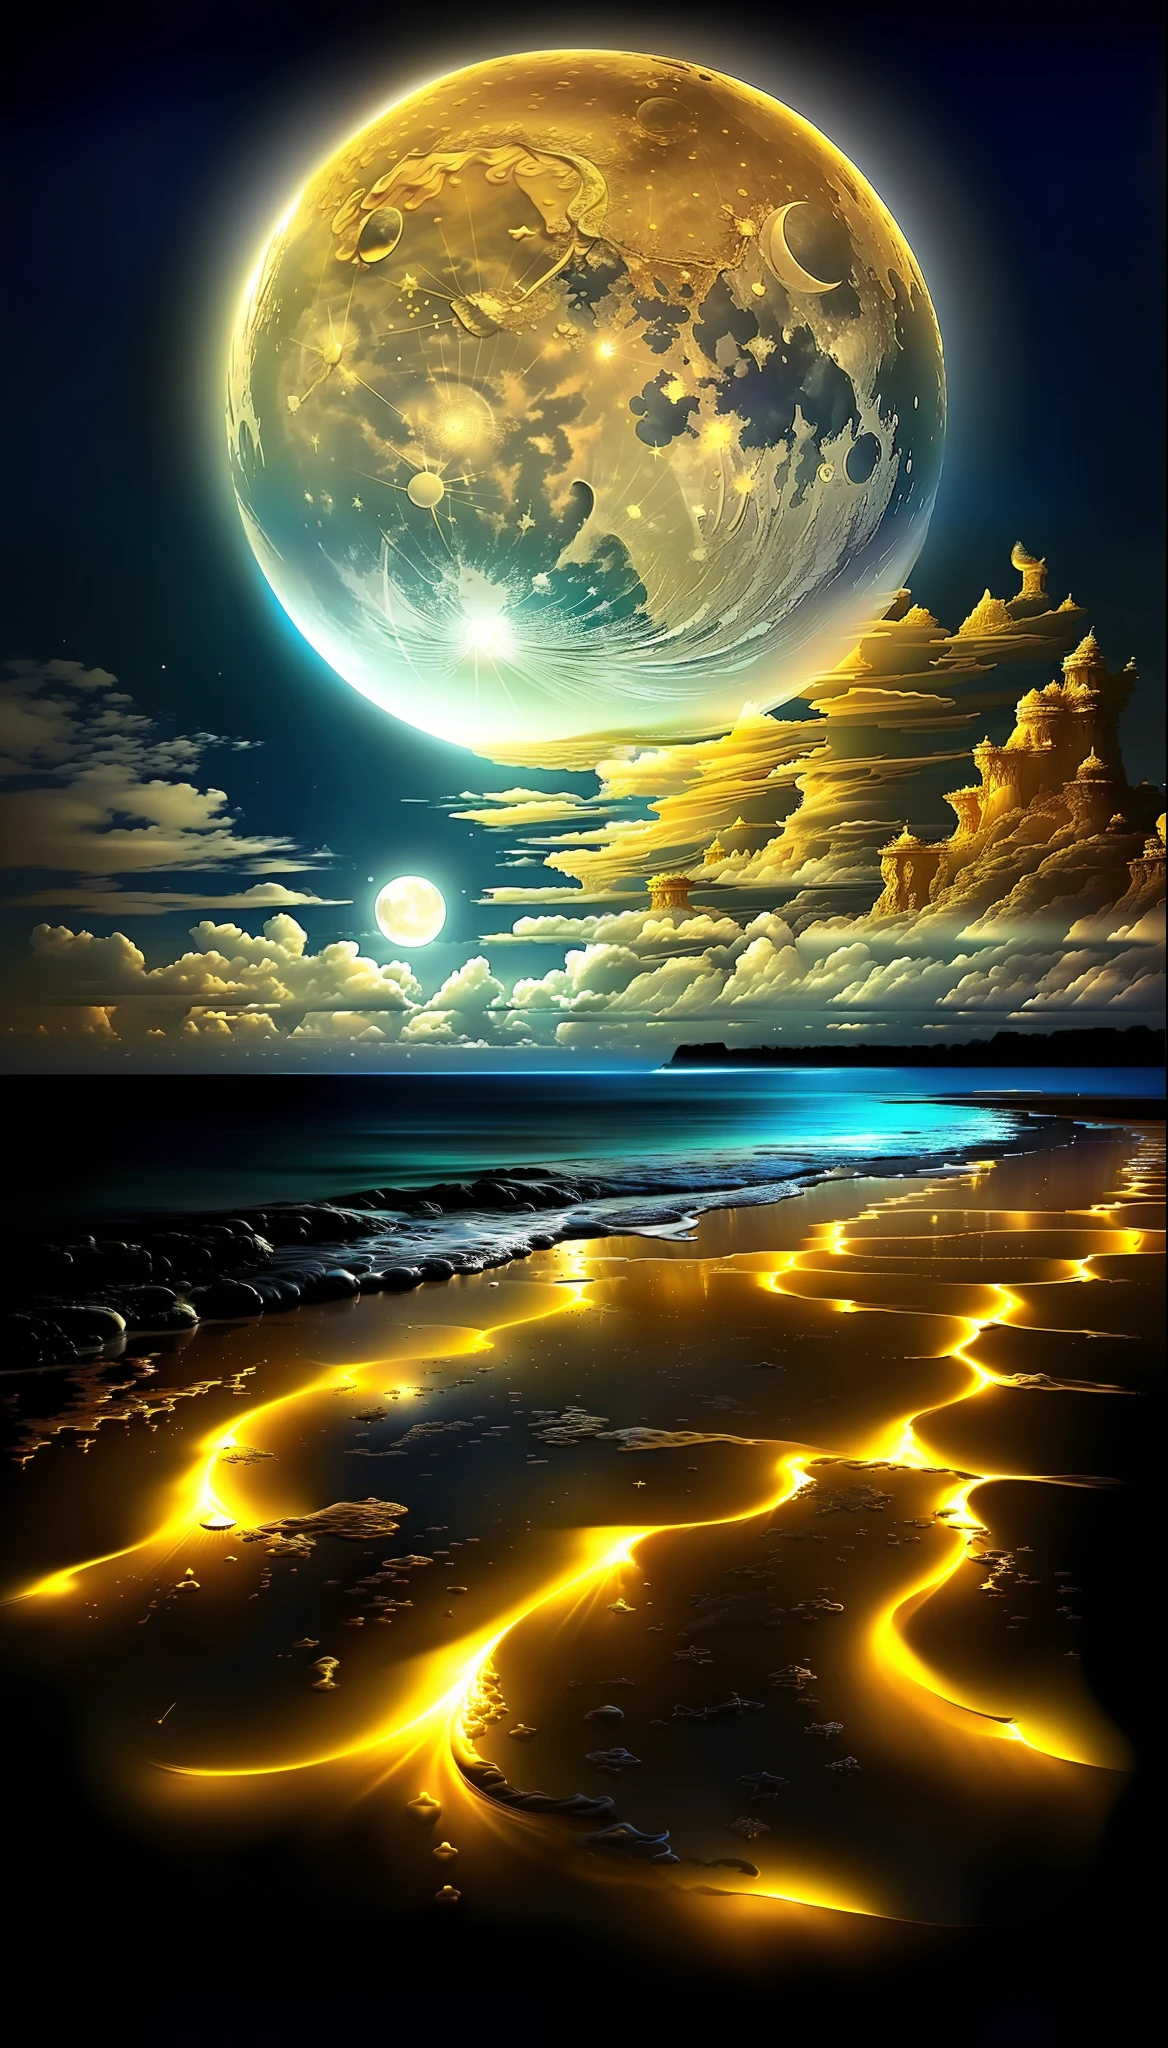 une peinture d&#39;une plage avec une pleine lune dorée et quelques nuages, Plage Magique, Paysage de lune blanche de sable, espace surréaliste, Magnifique fond, belle image déjà créée, Univers dans un grain de sable, gouttes magiques bleues de l&#39;océan, paysage de rêve détaillé, Lune brillante lumière dorée, belle rêveuse à couper le souffle, dans le plan astral ) ), superbe économiseur d&#39;écran,  bel espace, beau clair de lune